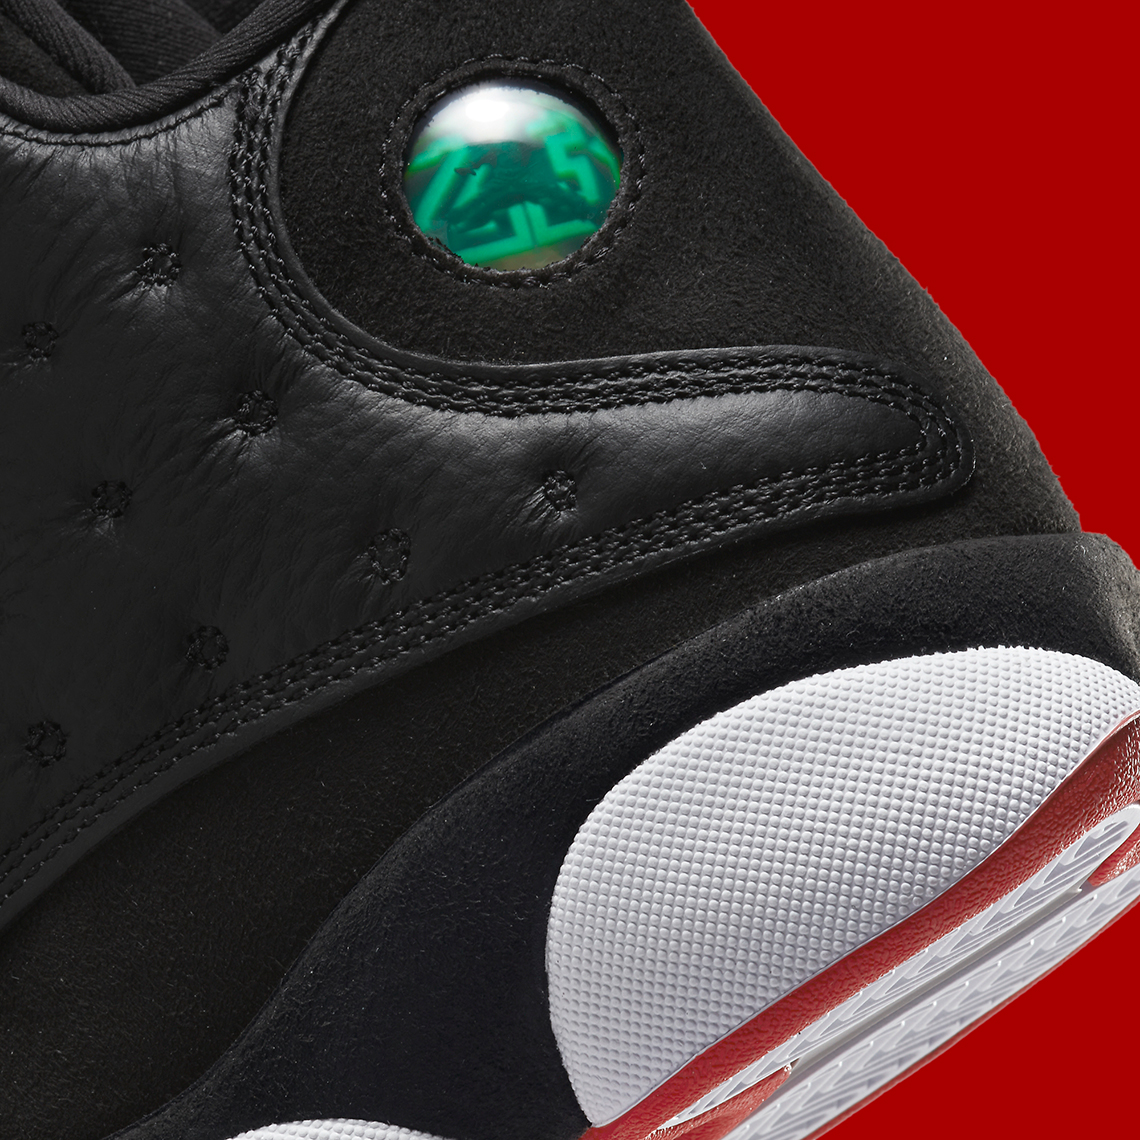 Nike reveals the Game Royal Air Jordan 1